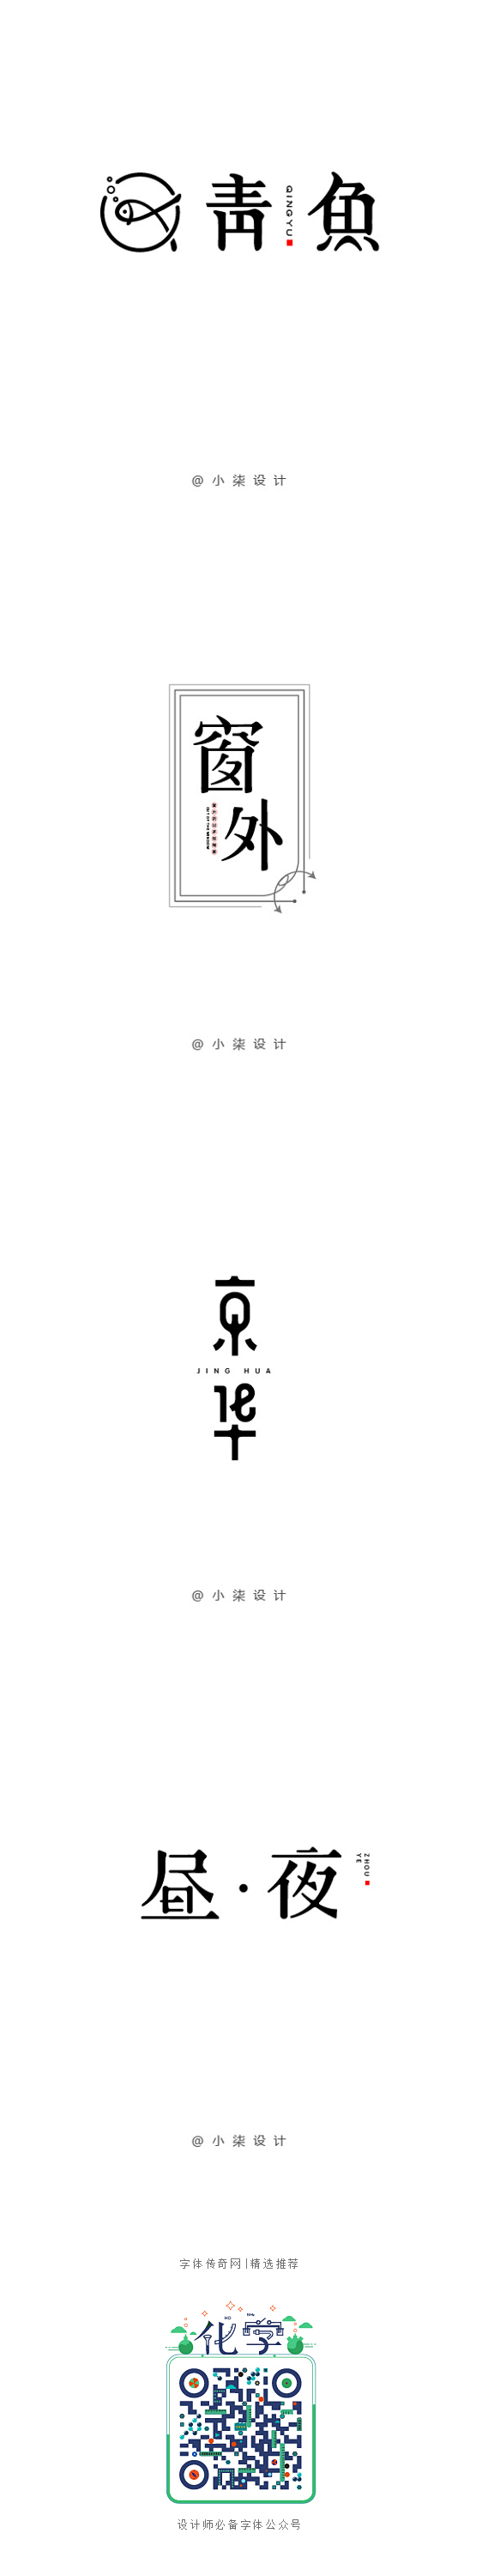 字体设计第二集-字体传奇网-中国首个字体...